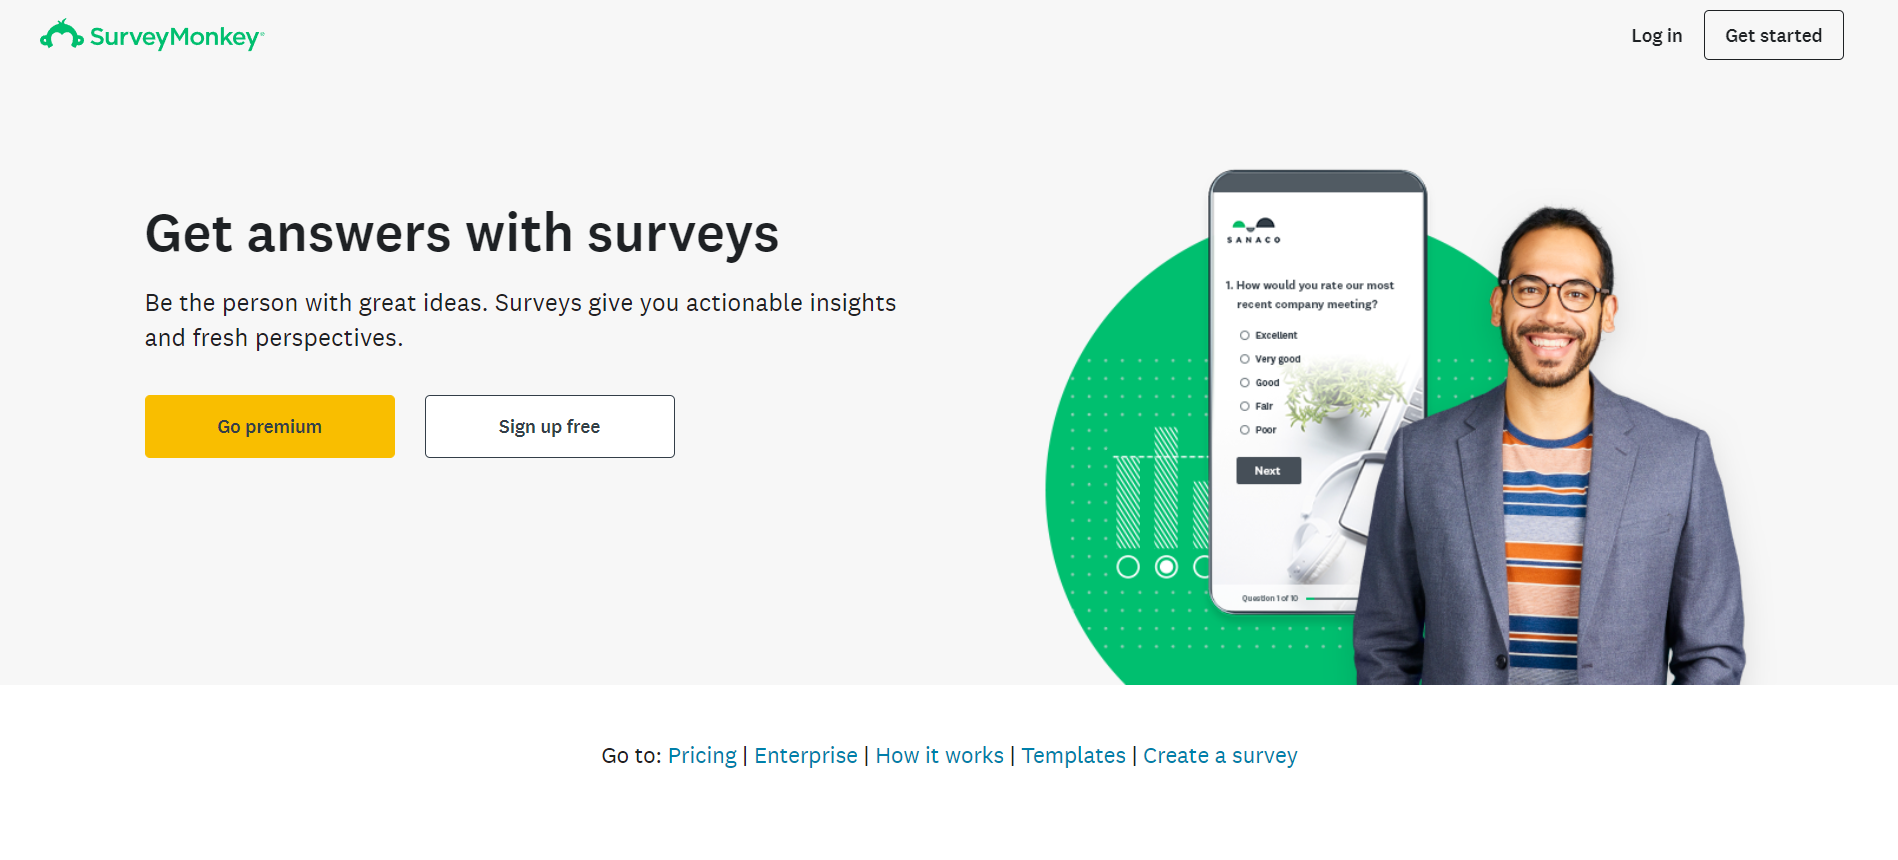 SurveyMonkey - SaaS tools for startups